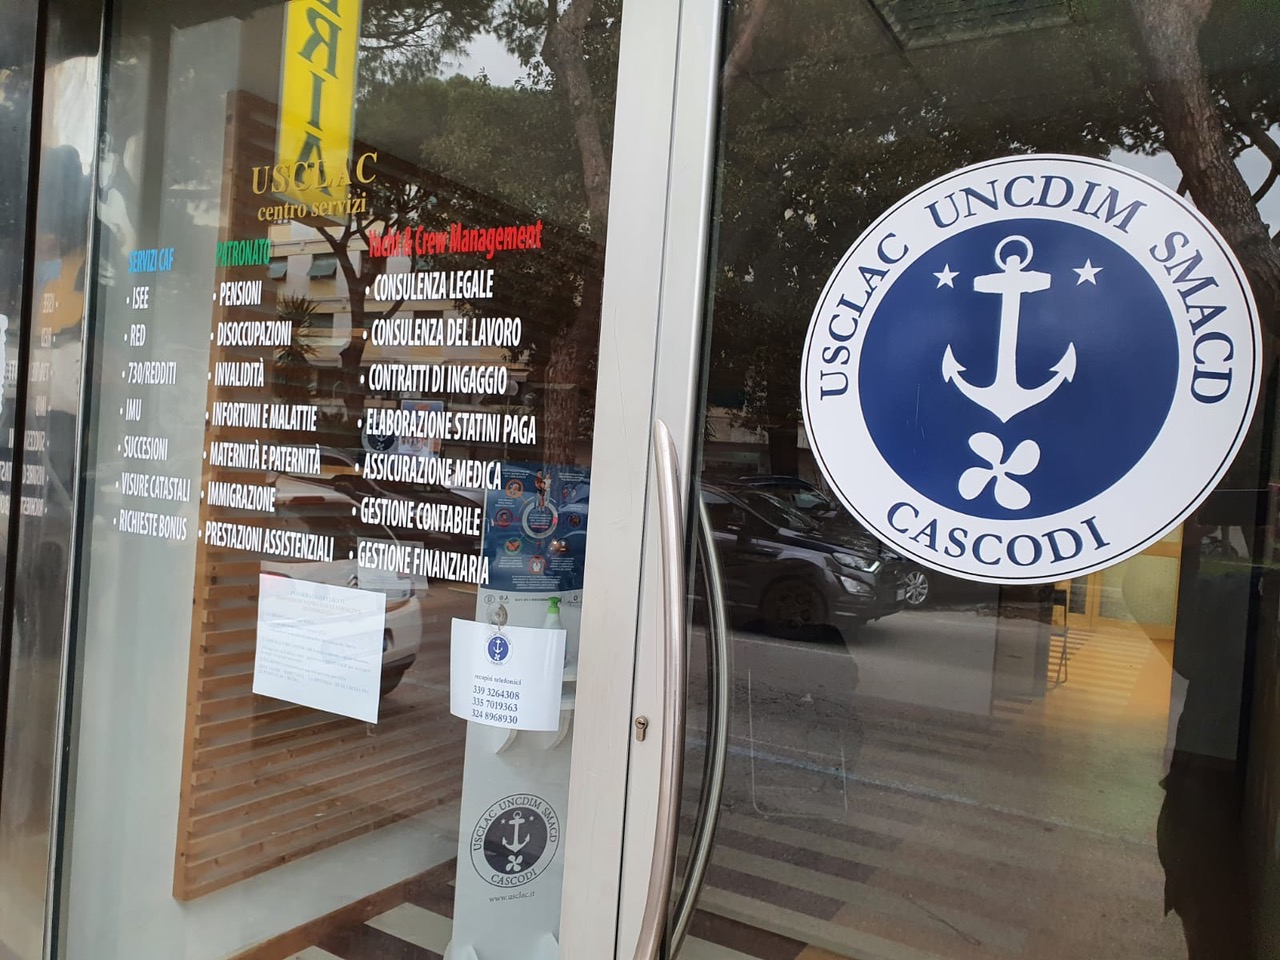 Yacht, nuovi servizi per gli equipaggi: a Viareggio attivato un Caf per le consulenze